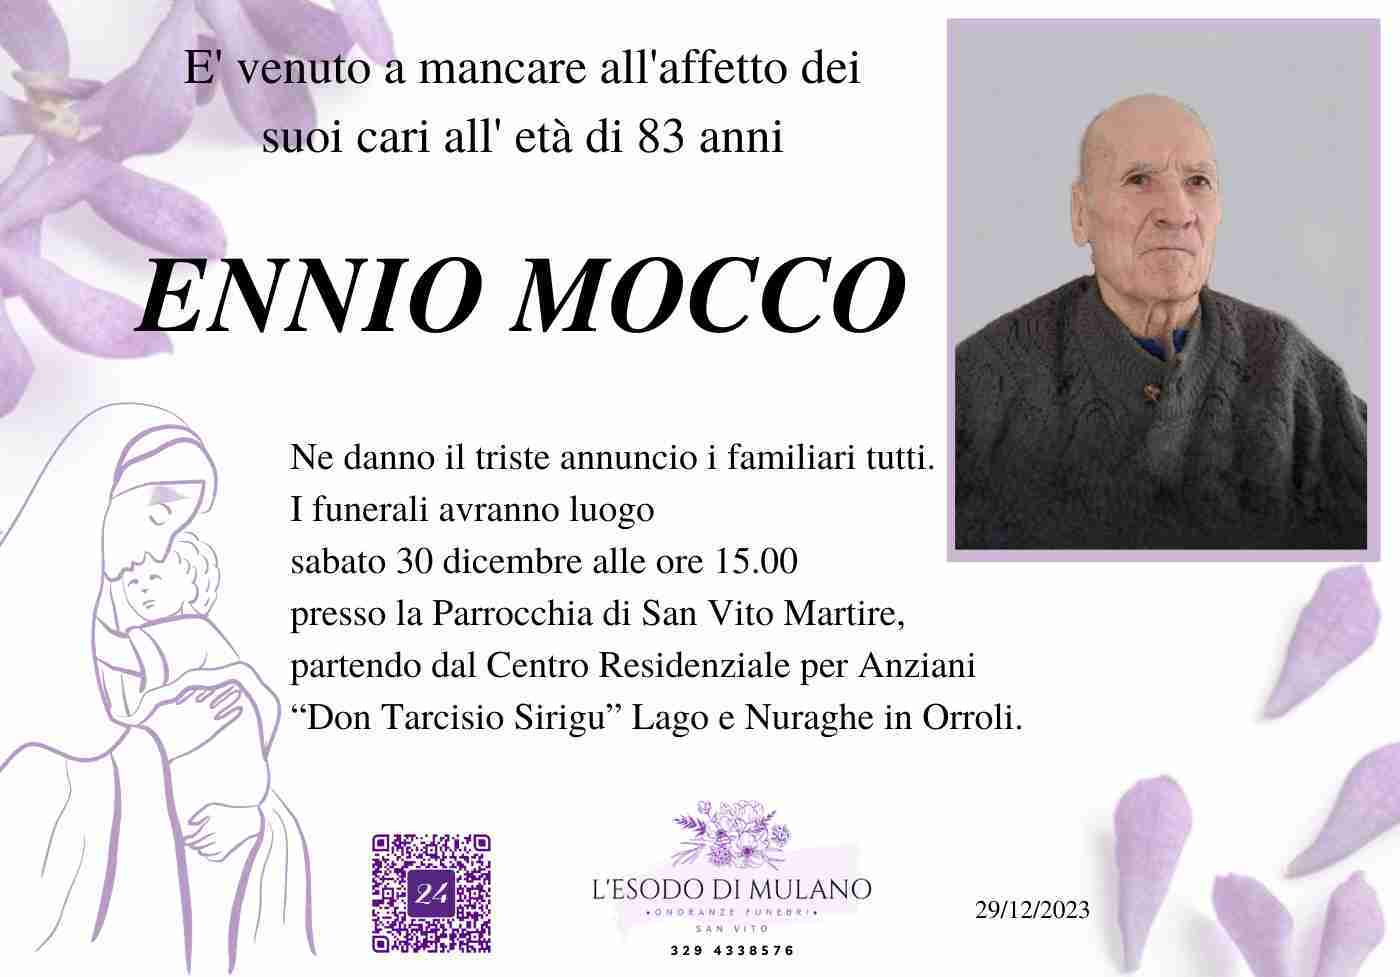 Ennio Mocco